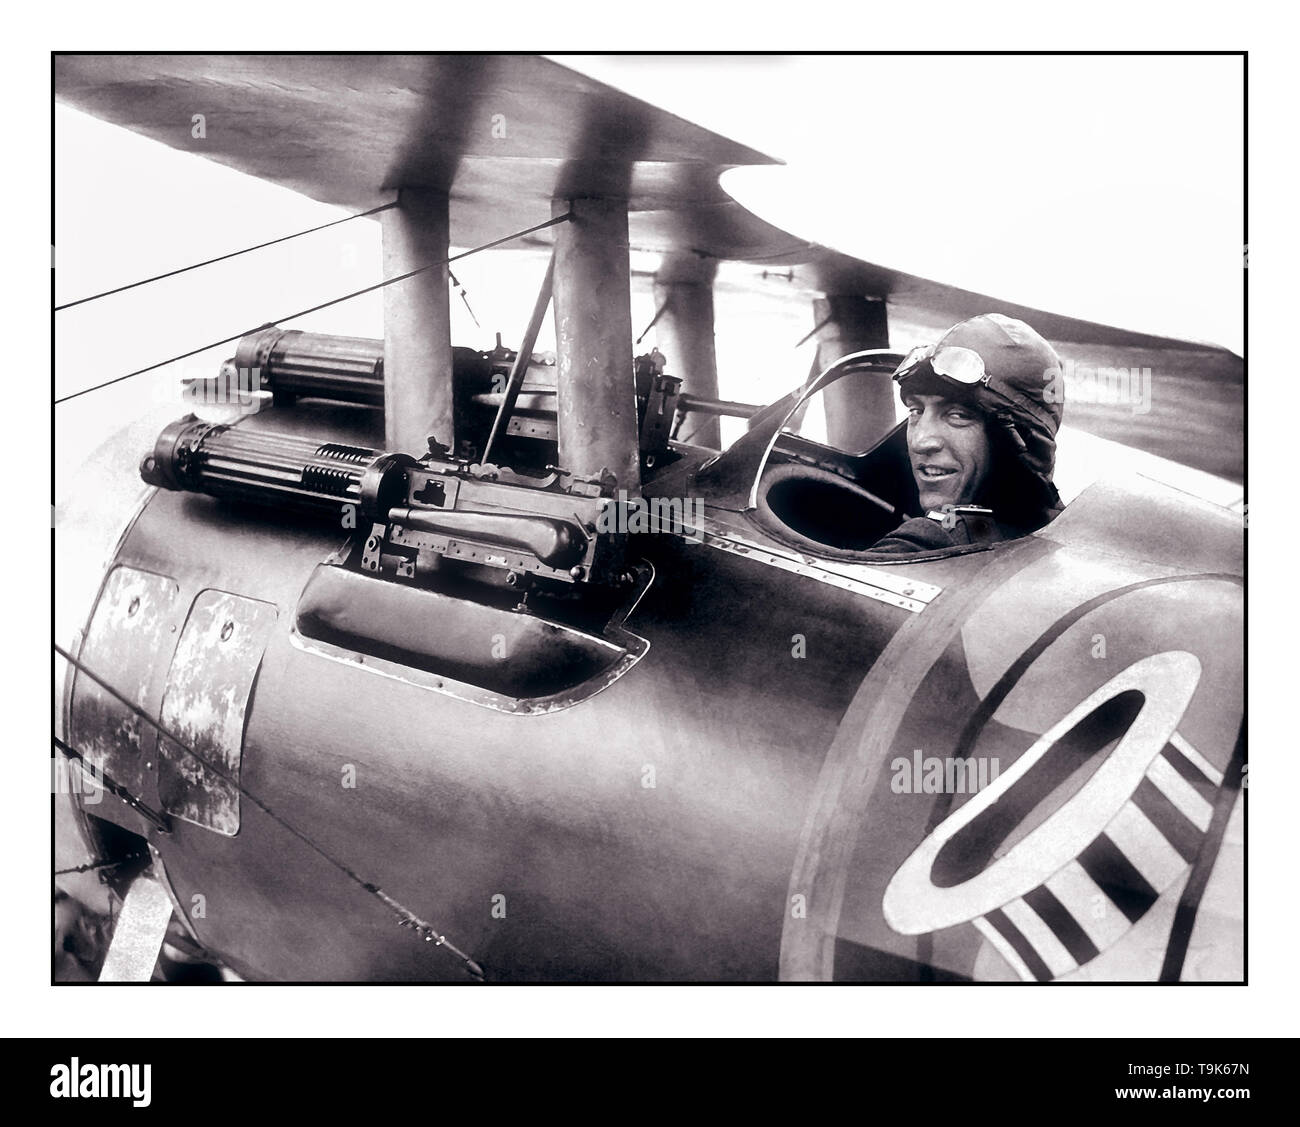 WW1 American Flying Ace Eddie Rickenbacker V 94th Aero Squadron avec son biplan Nieuport 28 22 juin 1918 America's plus de succès fighter ace dans la guerre. Rickenbacker a démontré qu'il avait un remplacement, et l'armée lui a attribué une place dans une des unités de combat aérien, le 94e Escadron Aero, officieusement connu comme le 'Hat-dans-le-Ring" après son insigne de l'Escadron. Banque D'Images